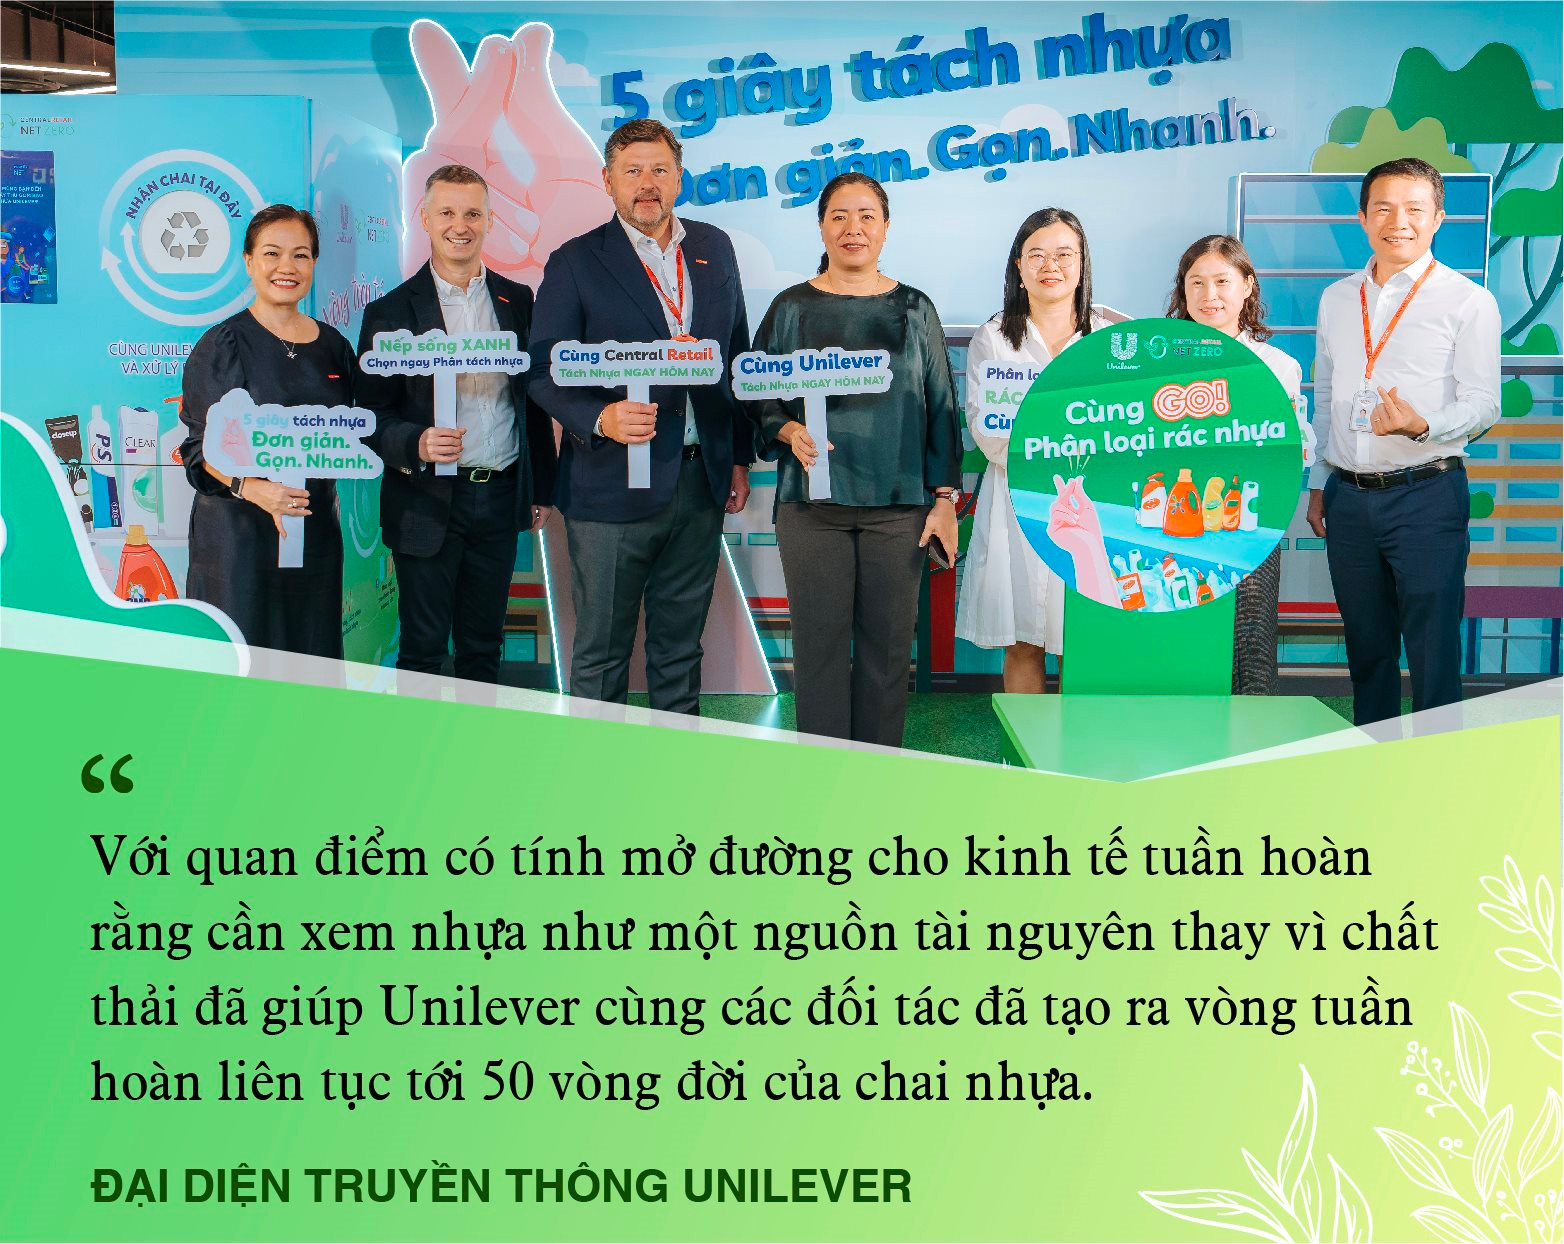 Tập đoàn đa quốc gia tái sinh nhựa tới 50 vòng đời, cải thiện đời sống cho hàng ngàn lao động Việt - Ảnh 3.